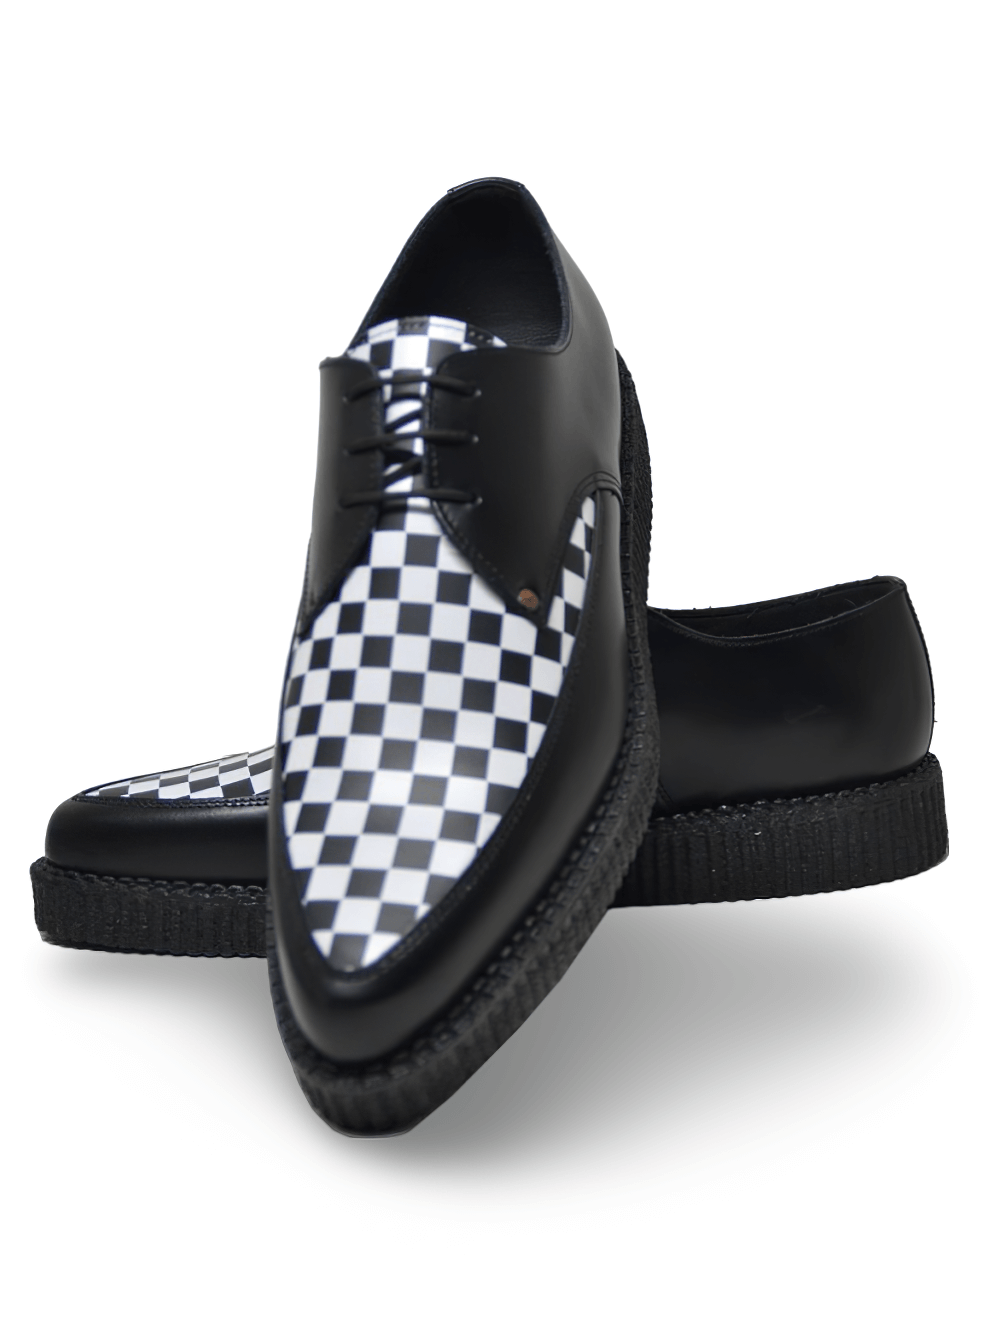 Zapatos creeper puntiagudos en cuadros blancos y negros